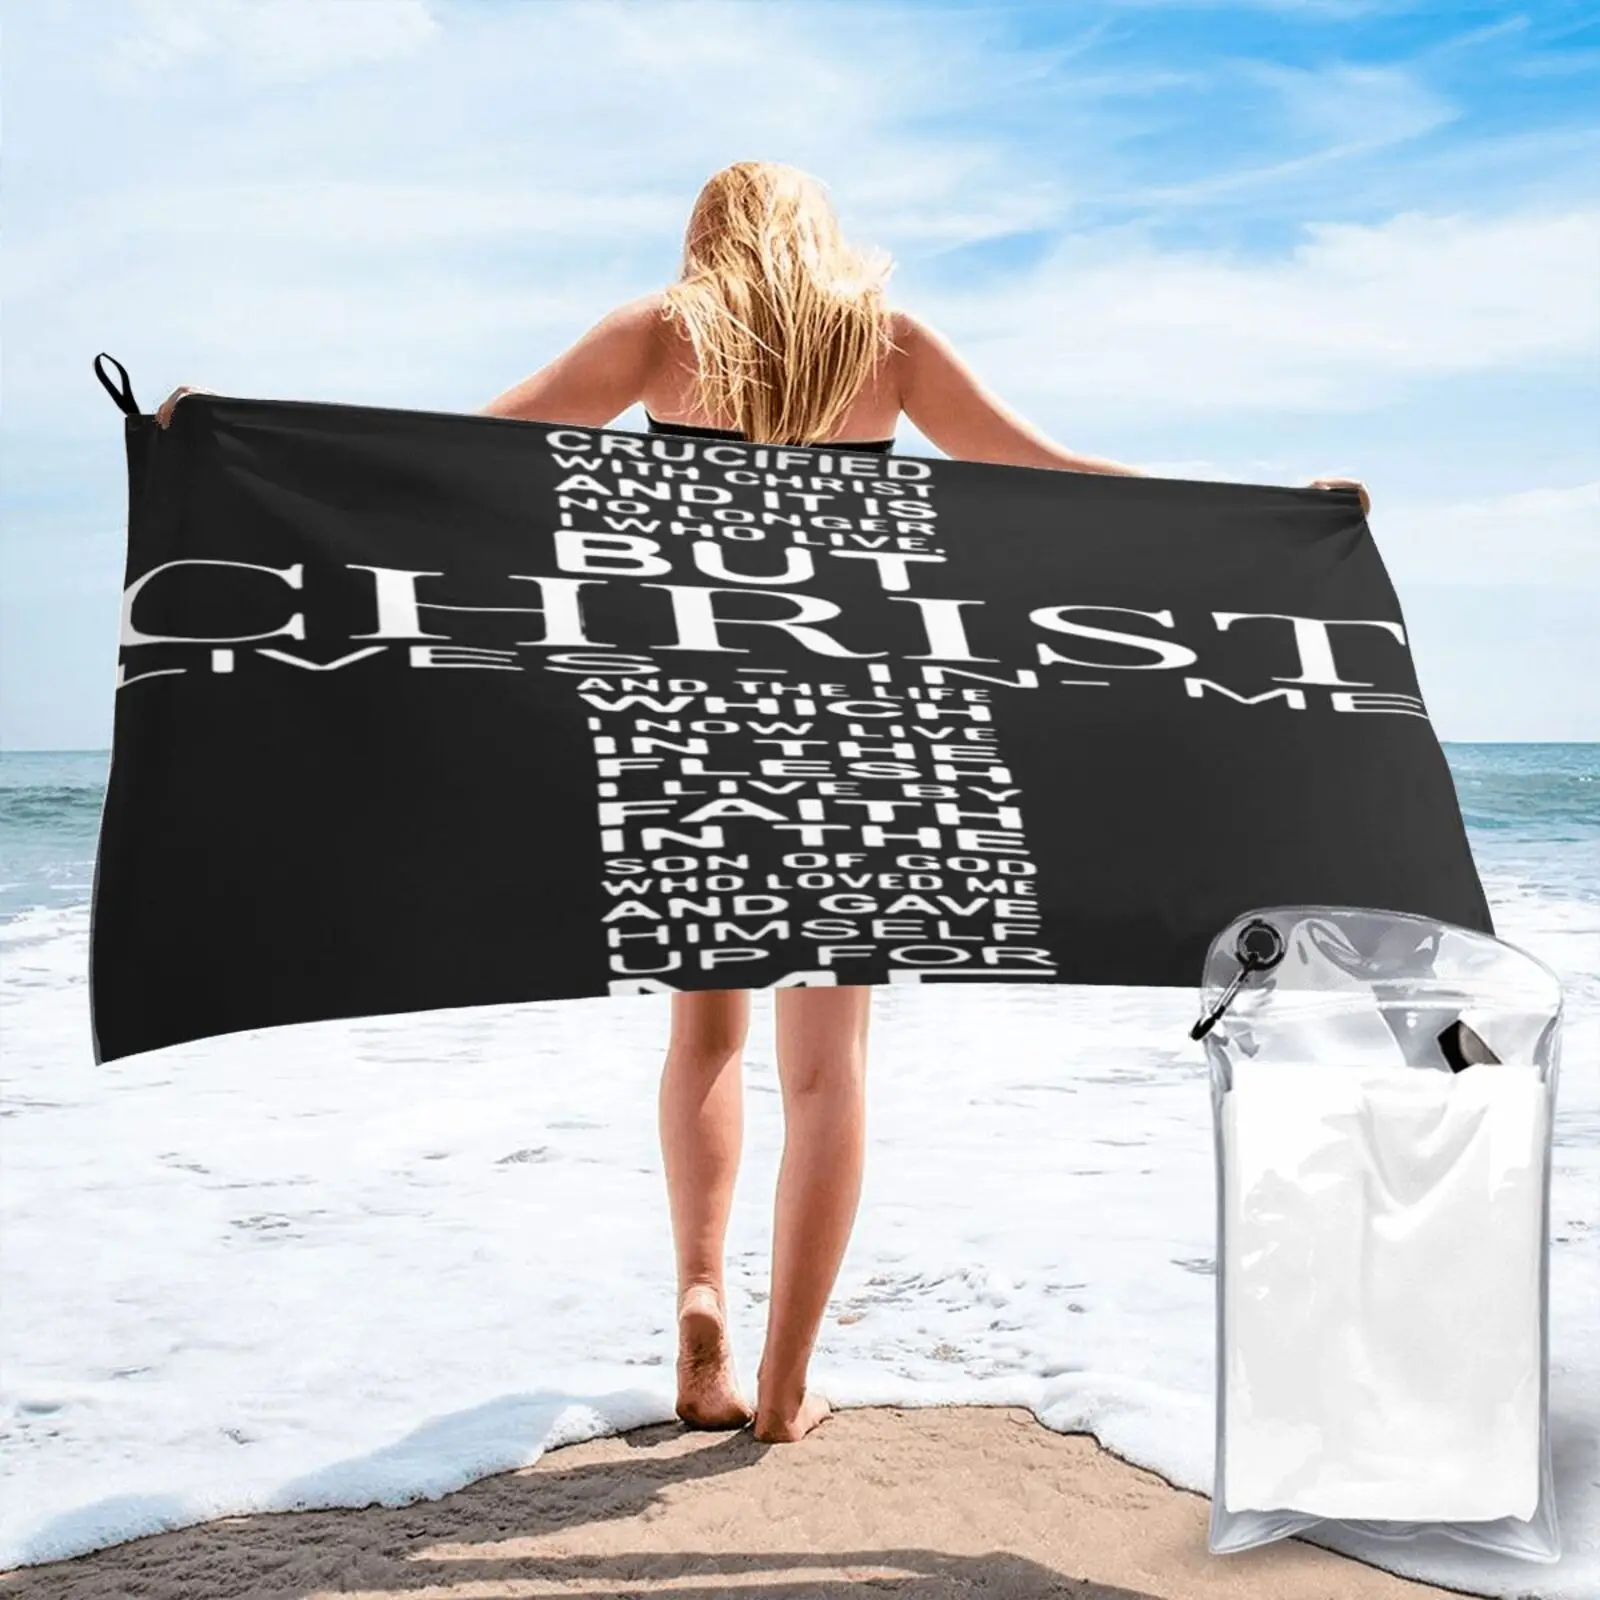 

Я распятился с Христом, пляжное полотенце для дома, кухонное полотенце, роскошное пляжное полотенце, банное полотенце для сауны, банная пляж...